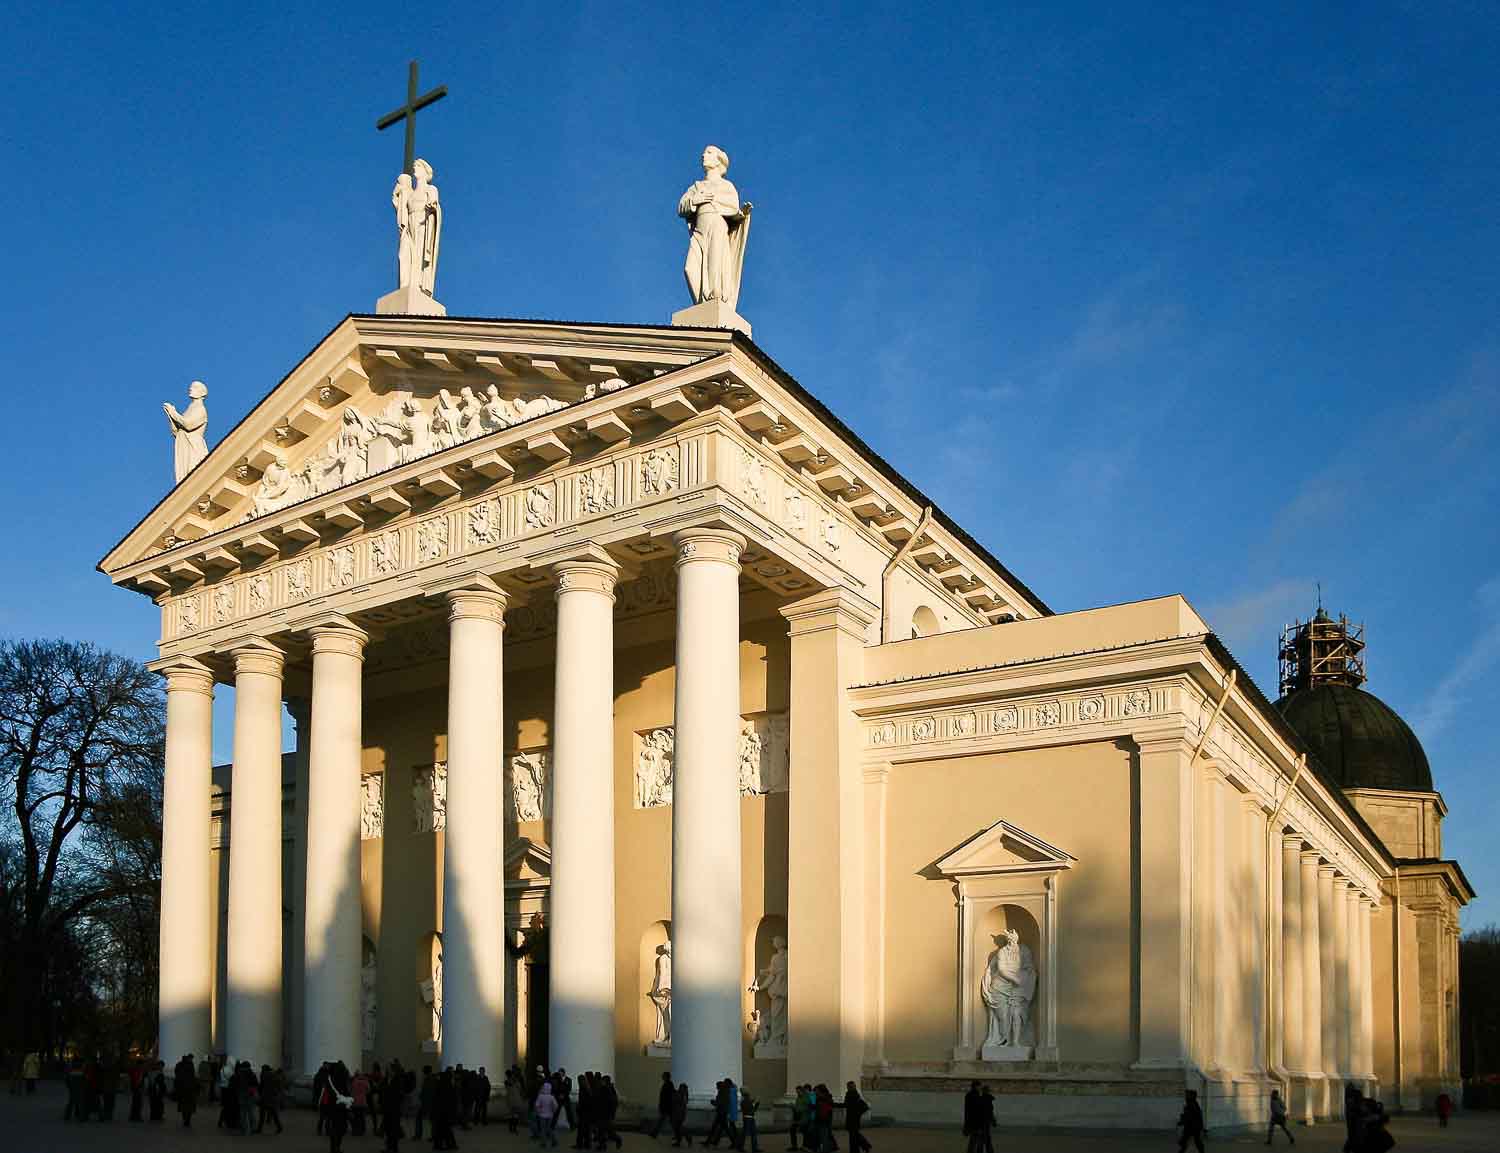 Nhà thờ Vilnius đặc trưng cho phong cách Tân cổ điển thế kỷ 18